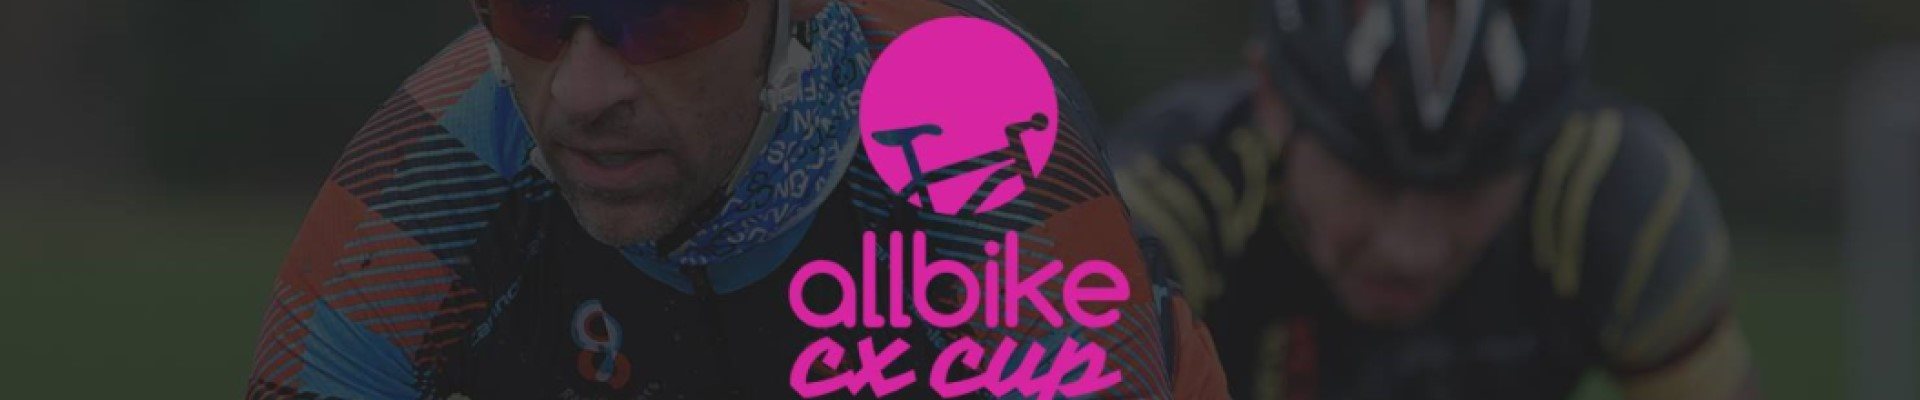 Allbike CX cup 19/20 #5 (Randers)